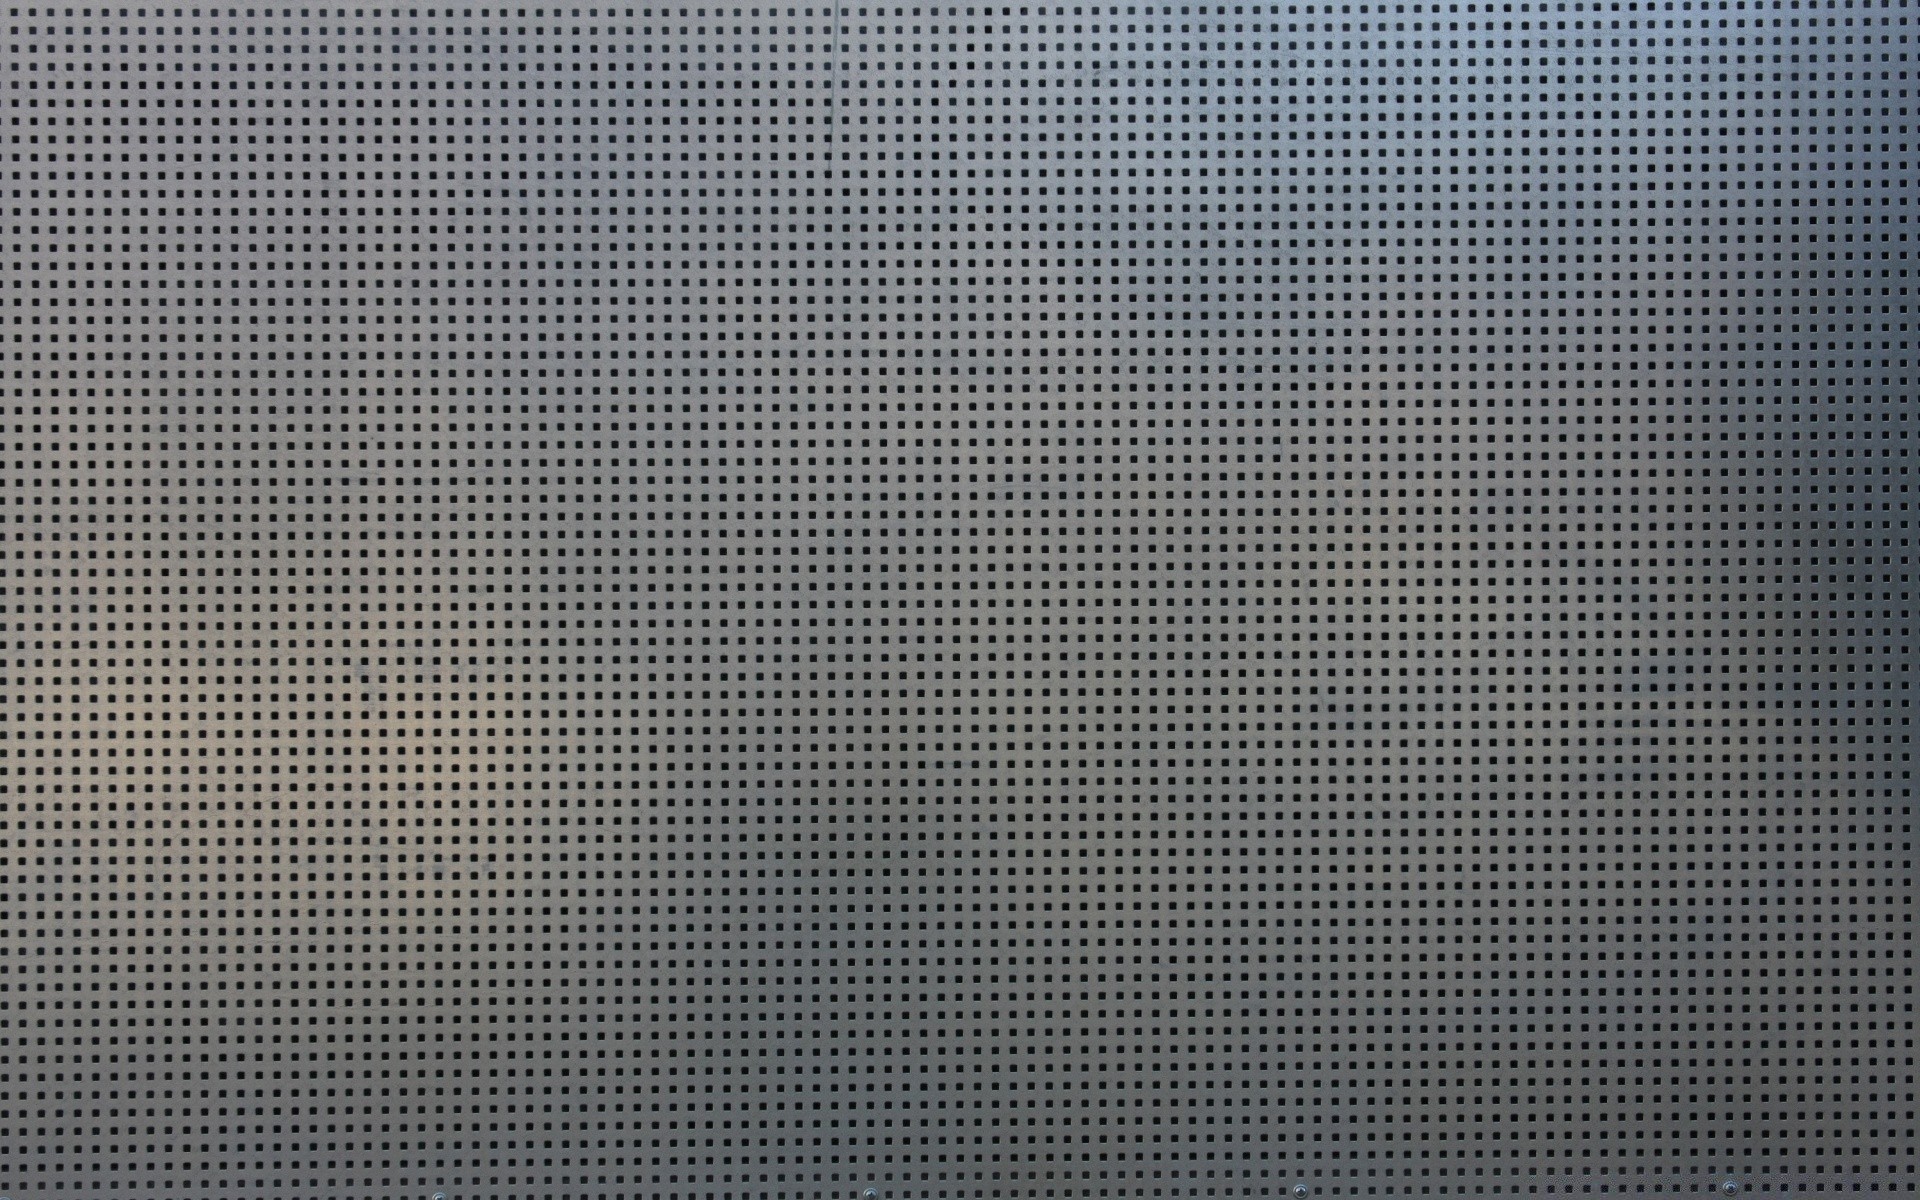 текстуры рабочего стола шаблон ткань аннотация обои поверхность дизайн бесшовные фон точка чистая текстиль крышка полька стены геометрические серый плитка волокна